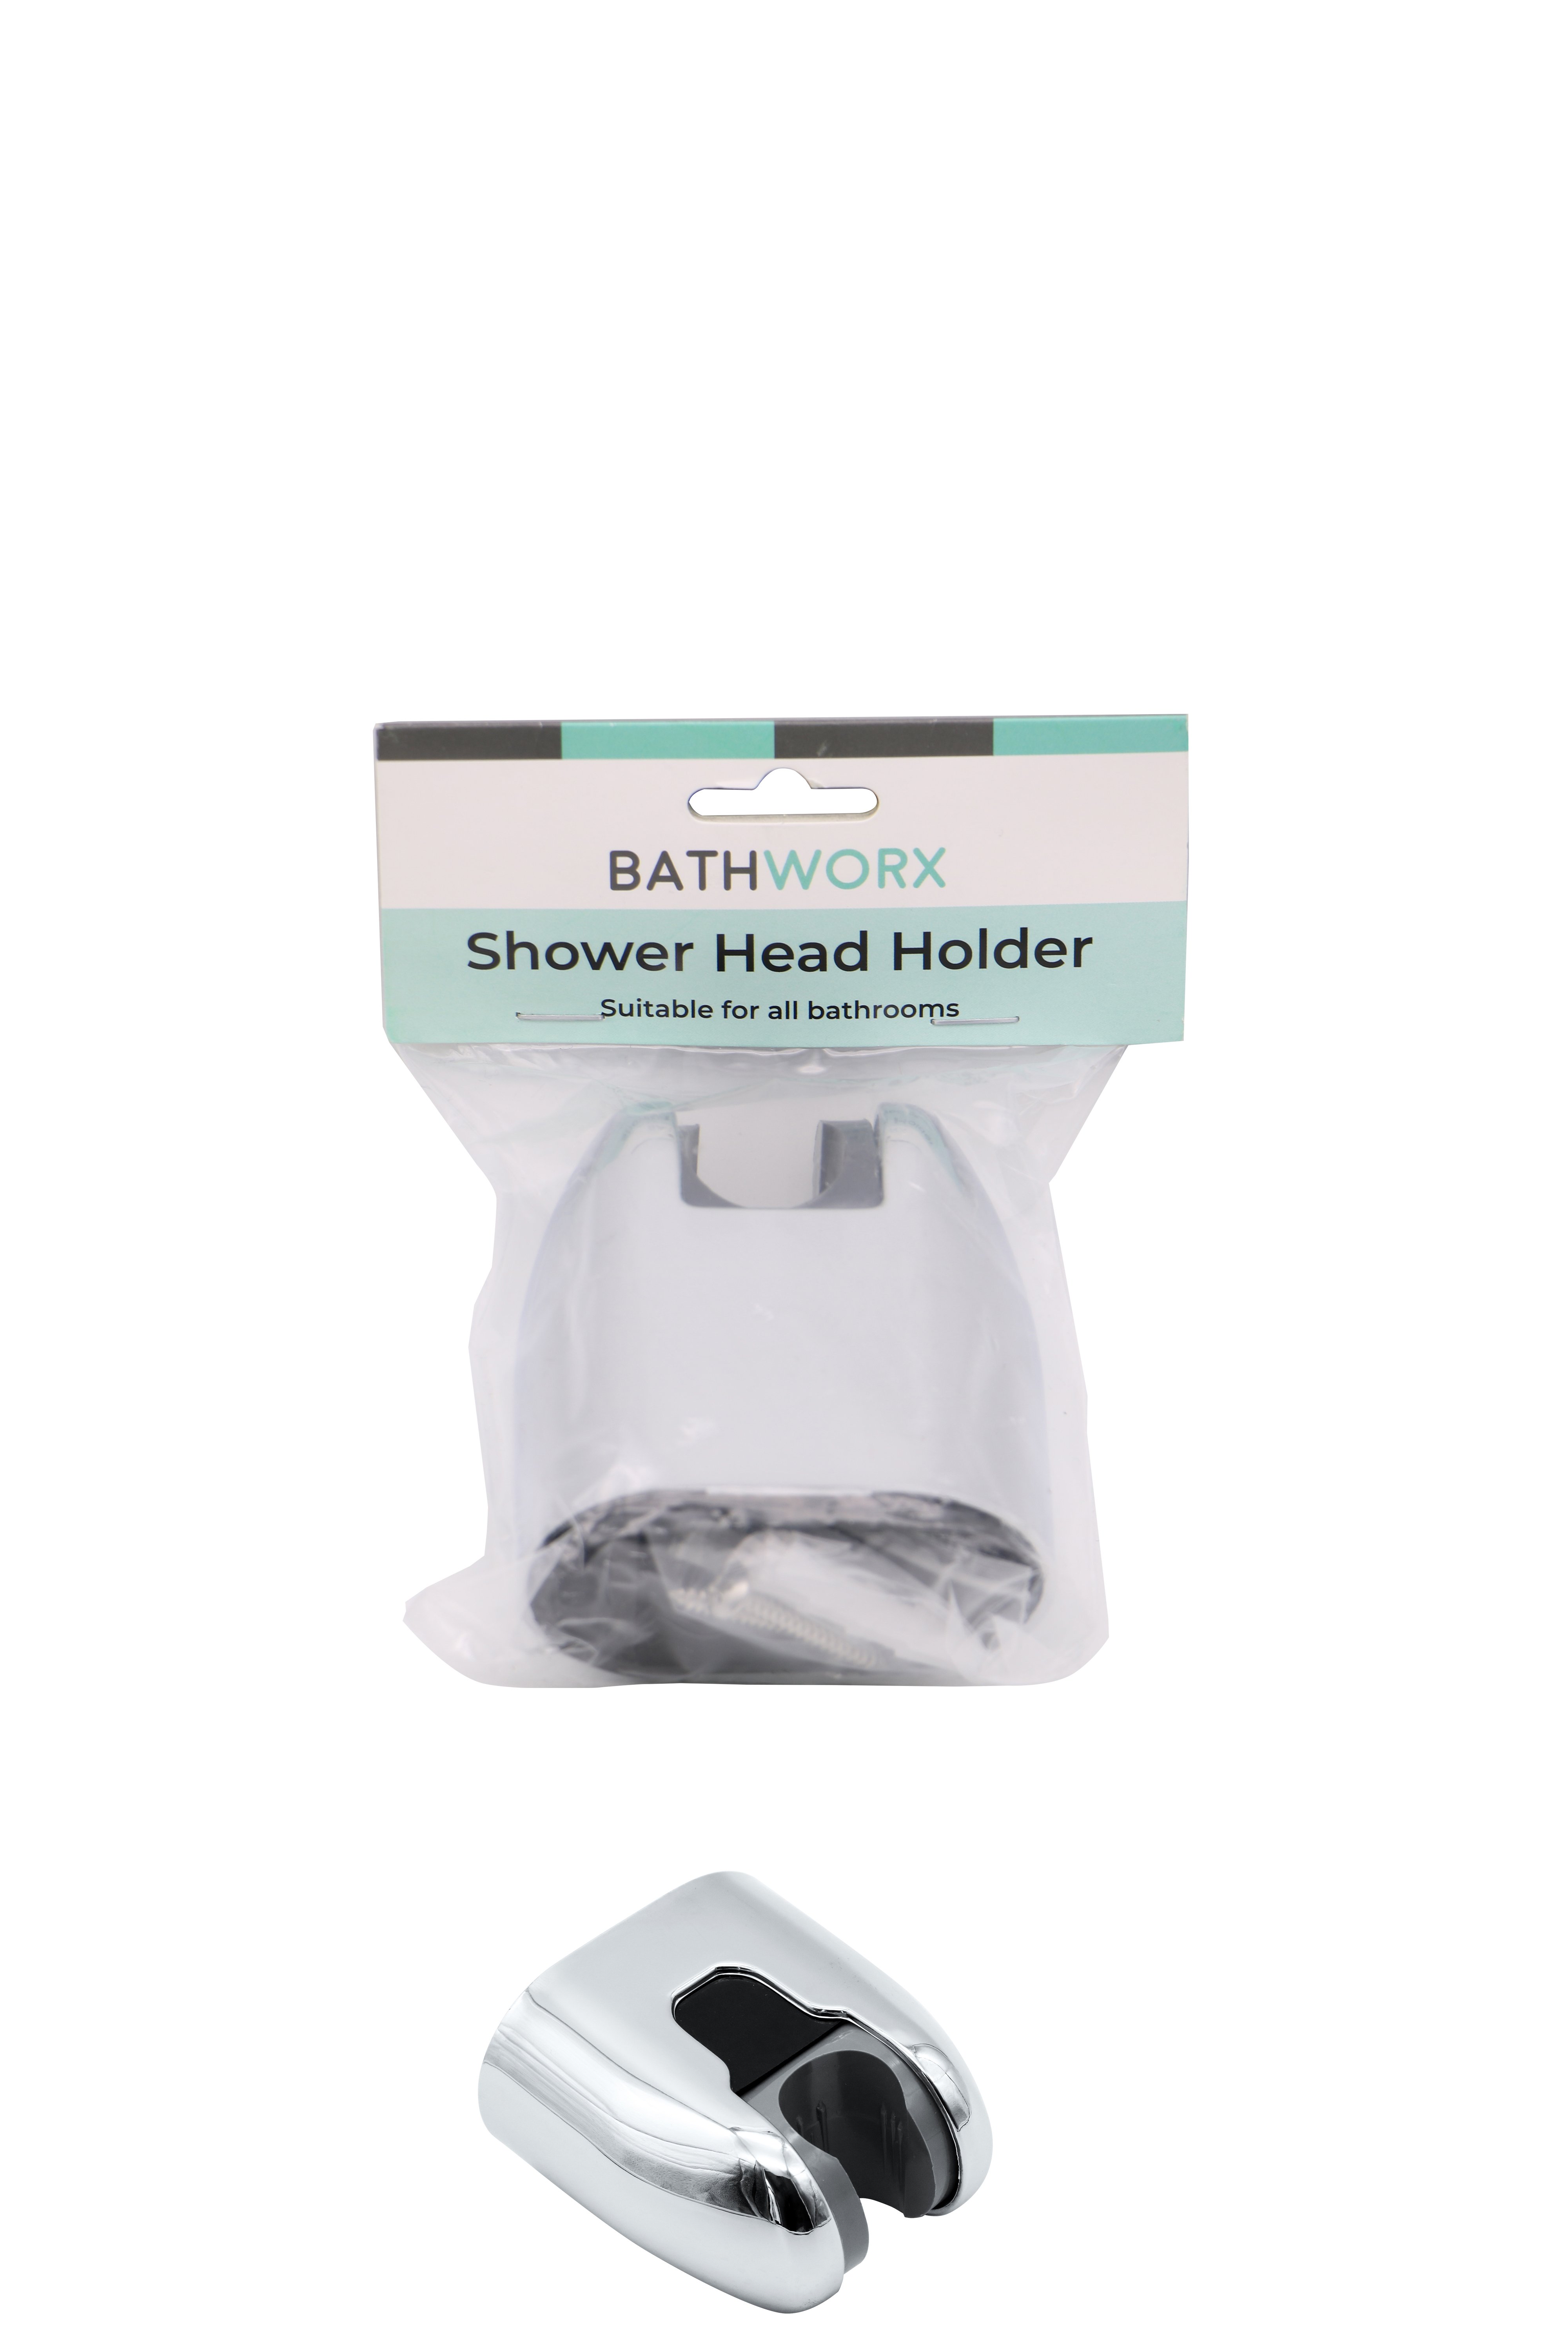 Bathworx Shower Head Holder